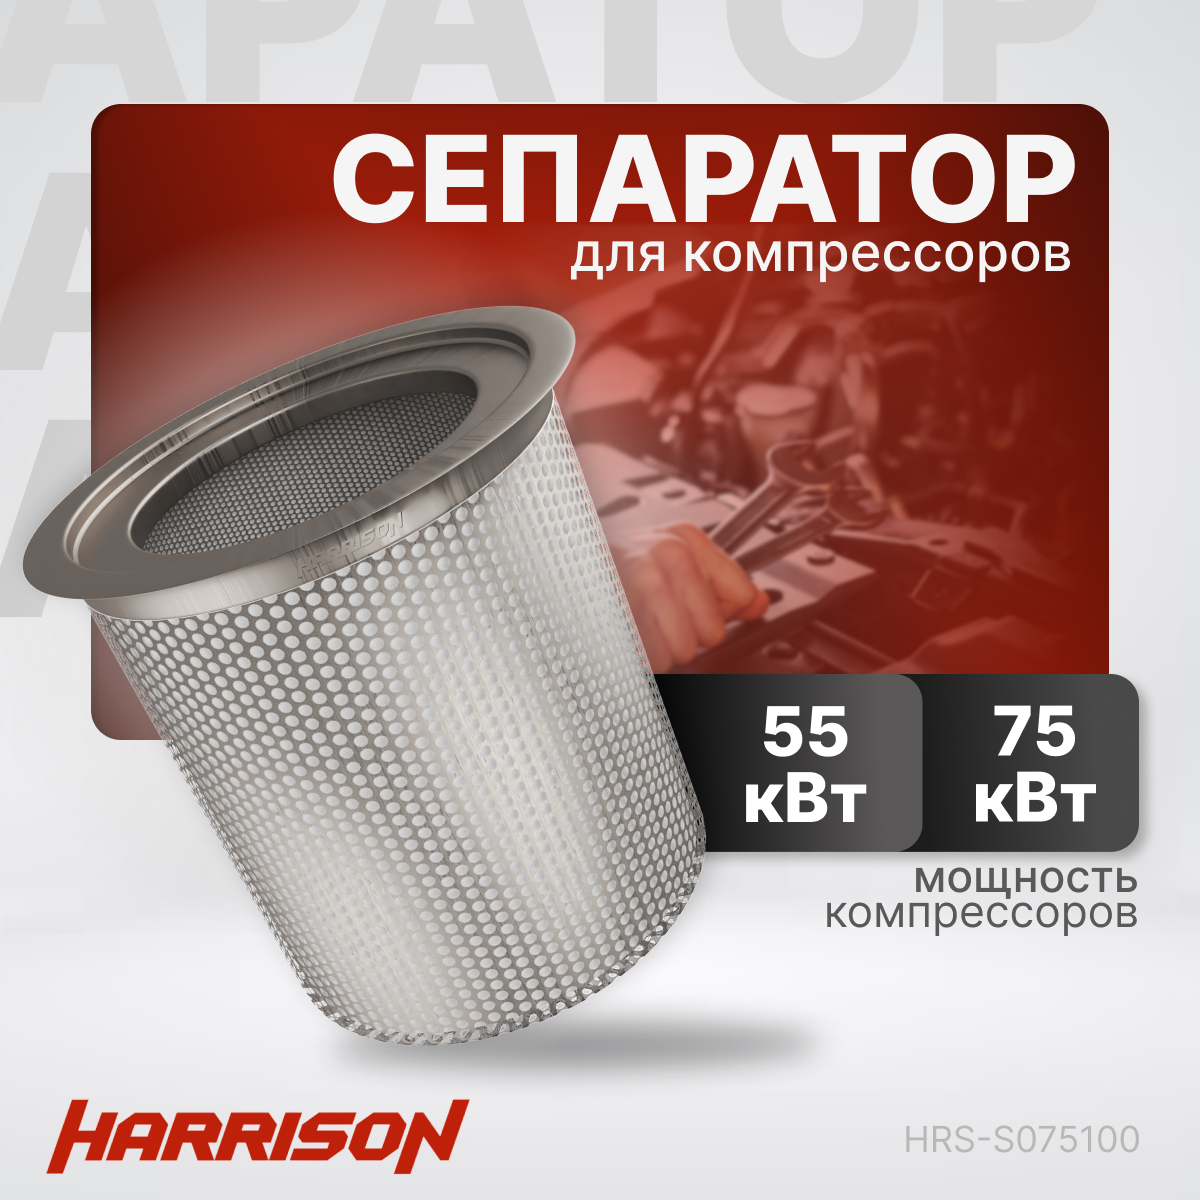 Сепаратор (маслоотделитель) HARRISON HRS-S075100 для компрессоров мощностью 55, 75 кВт